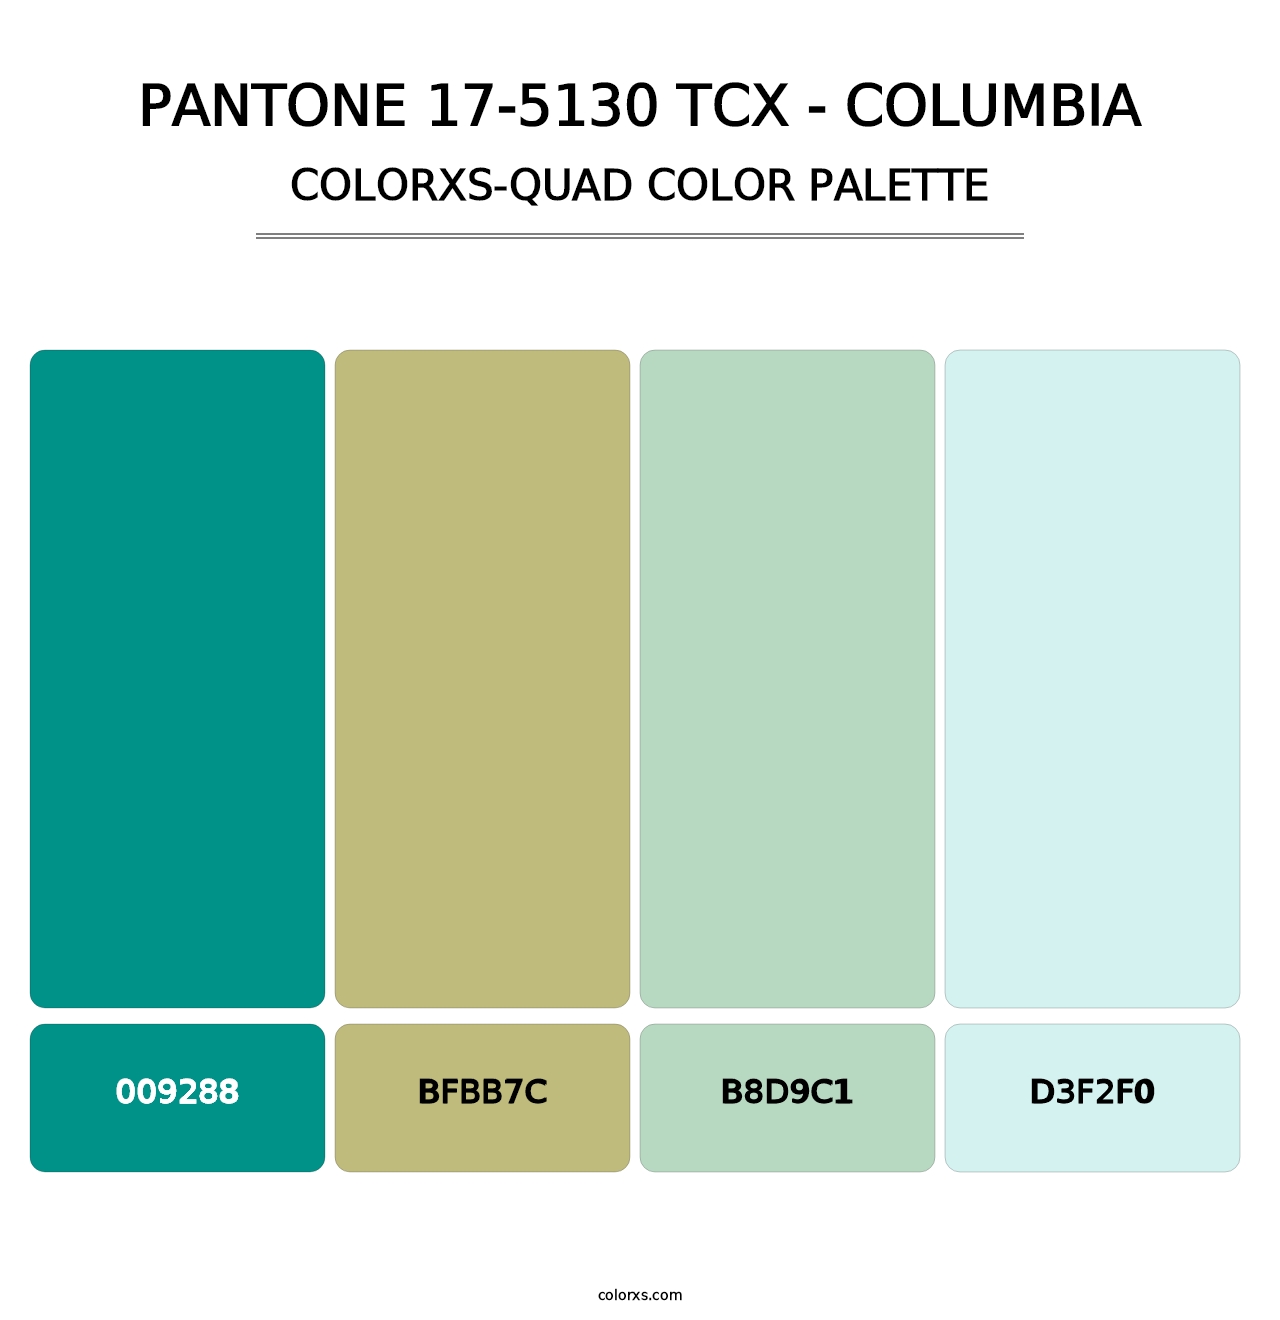 PANTONE 17-5130 TCX - Columbia - Colorxs Quad Palette